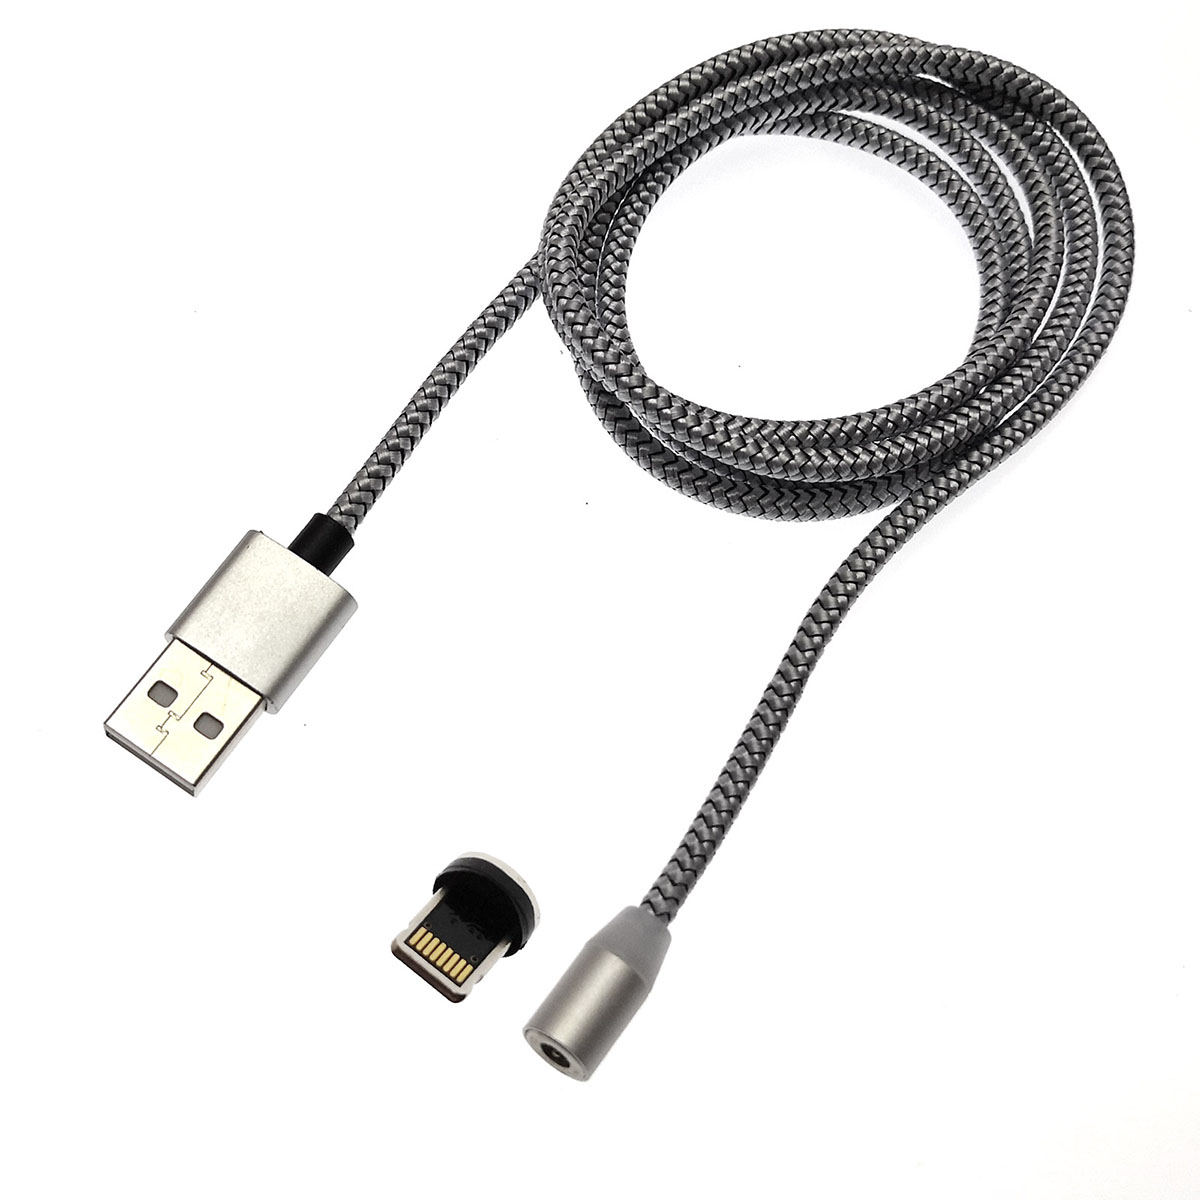 USB кабель магнитный 360 "Magnetic Cable" APPLE Lightning USB, длина 1 метр, тканевая оплетка, цвет серебристый.